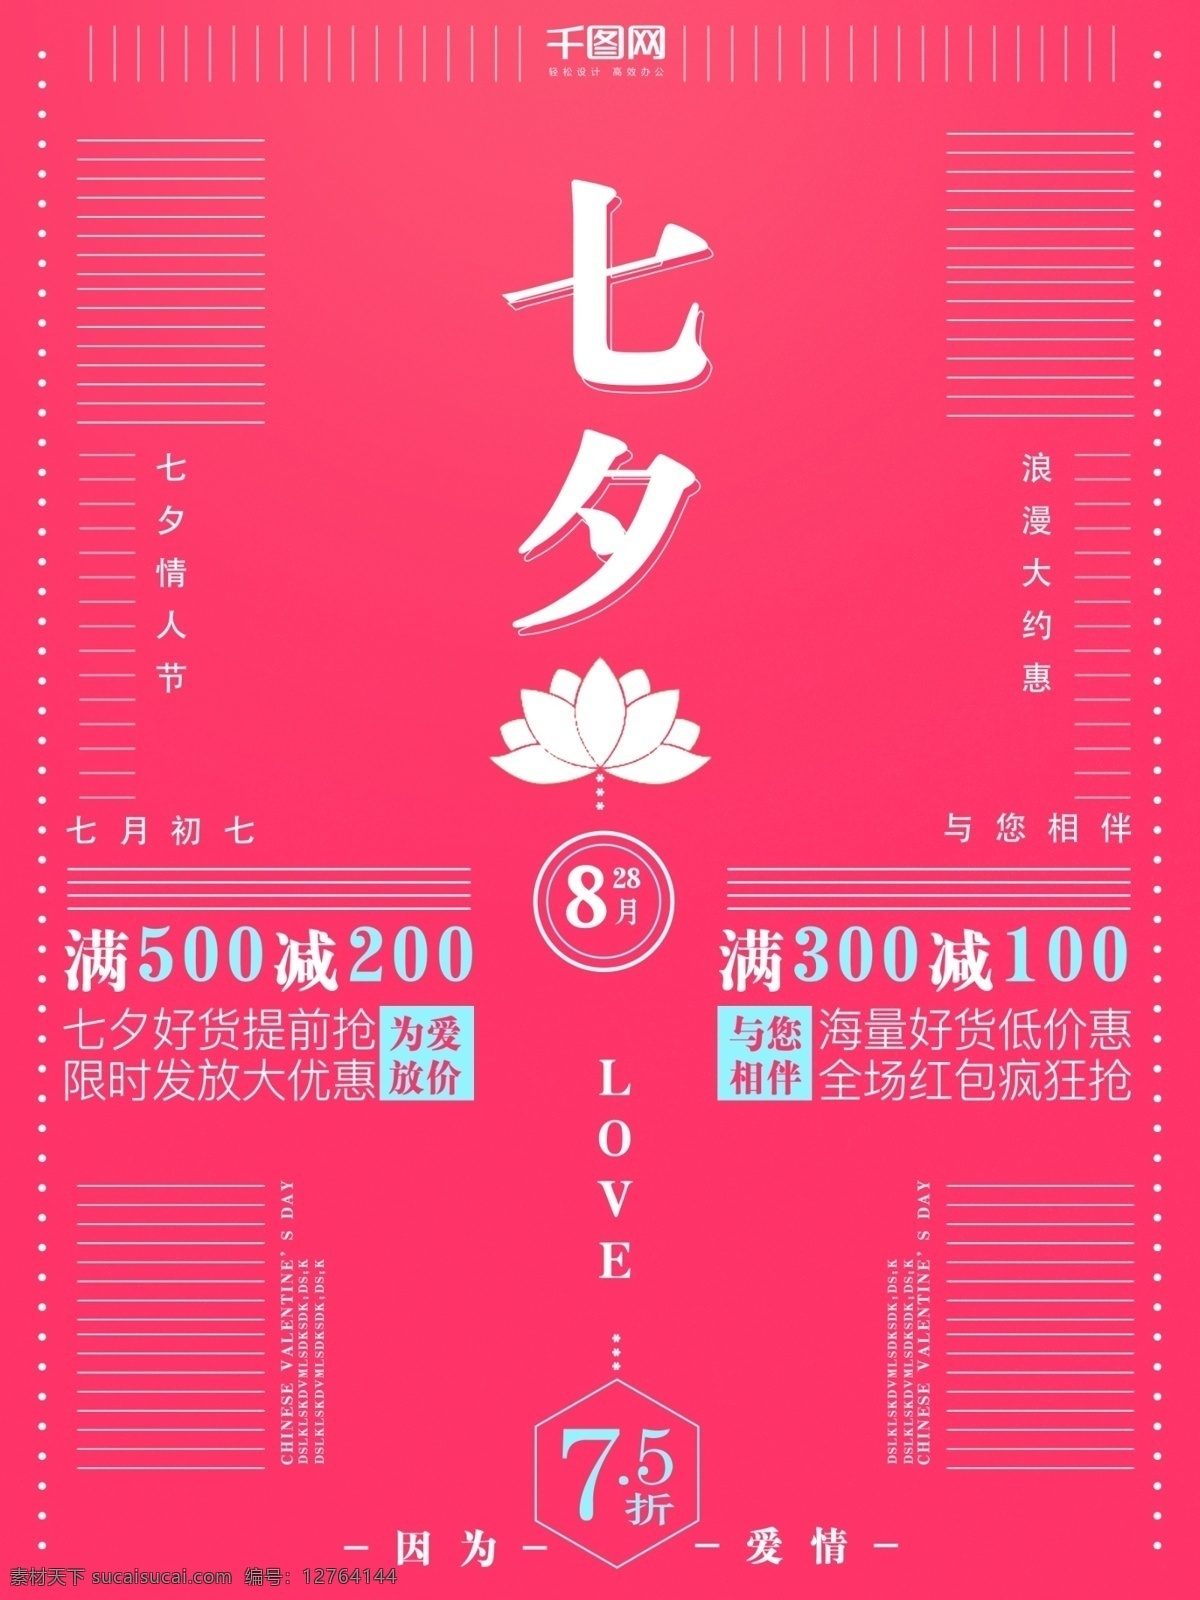 实验 式 七夕 节日 活动 促销 模板 海报 背景 排版